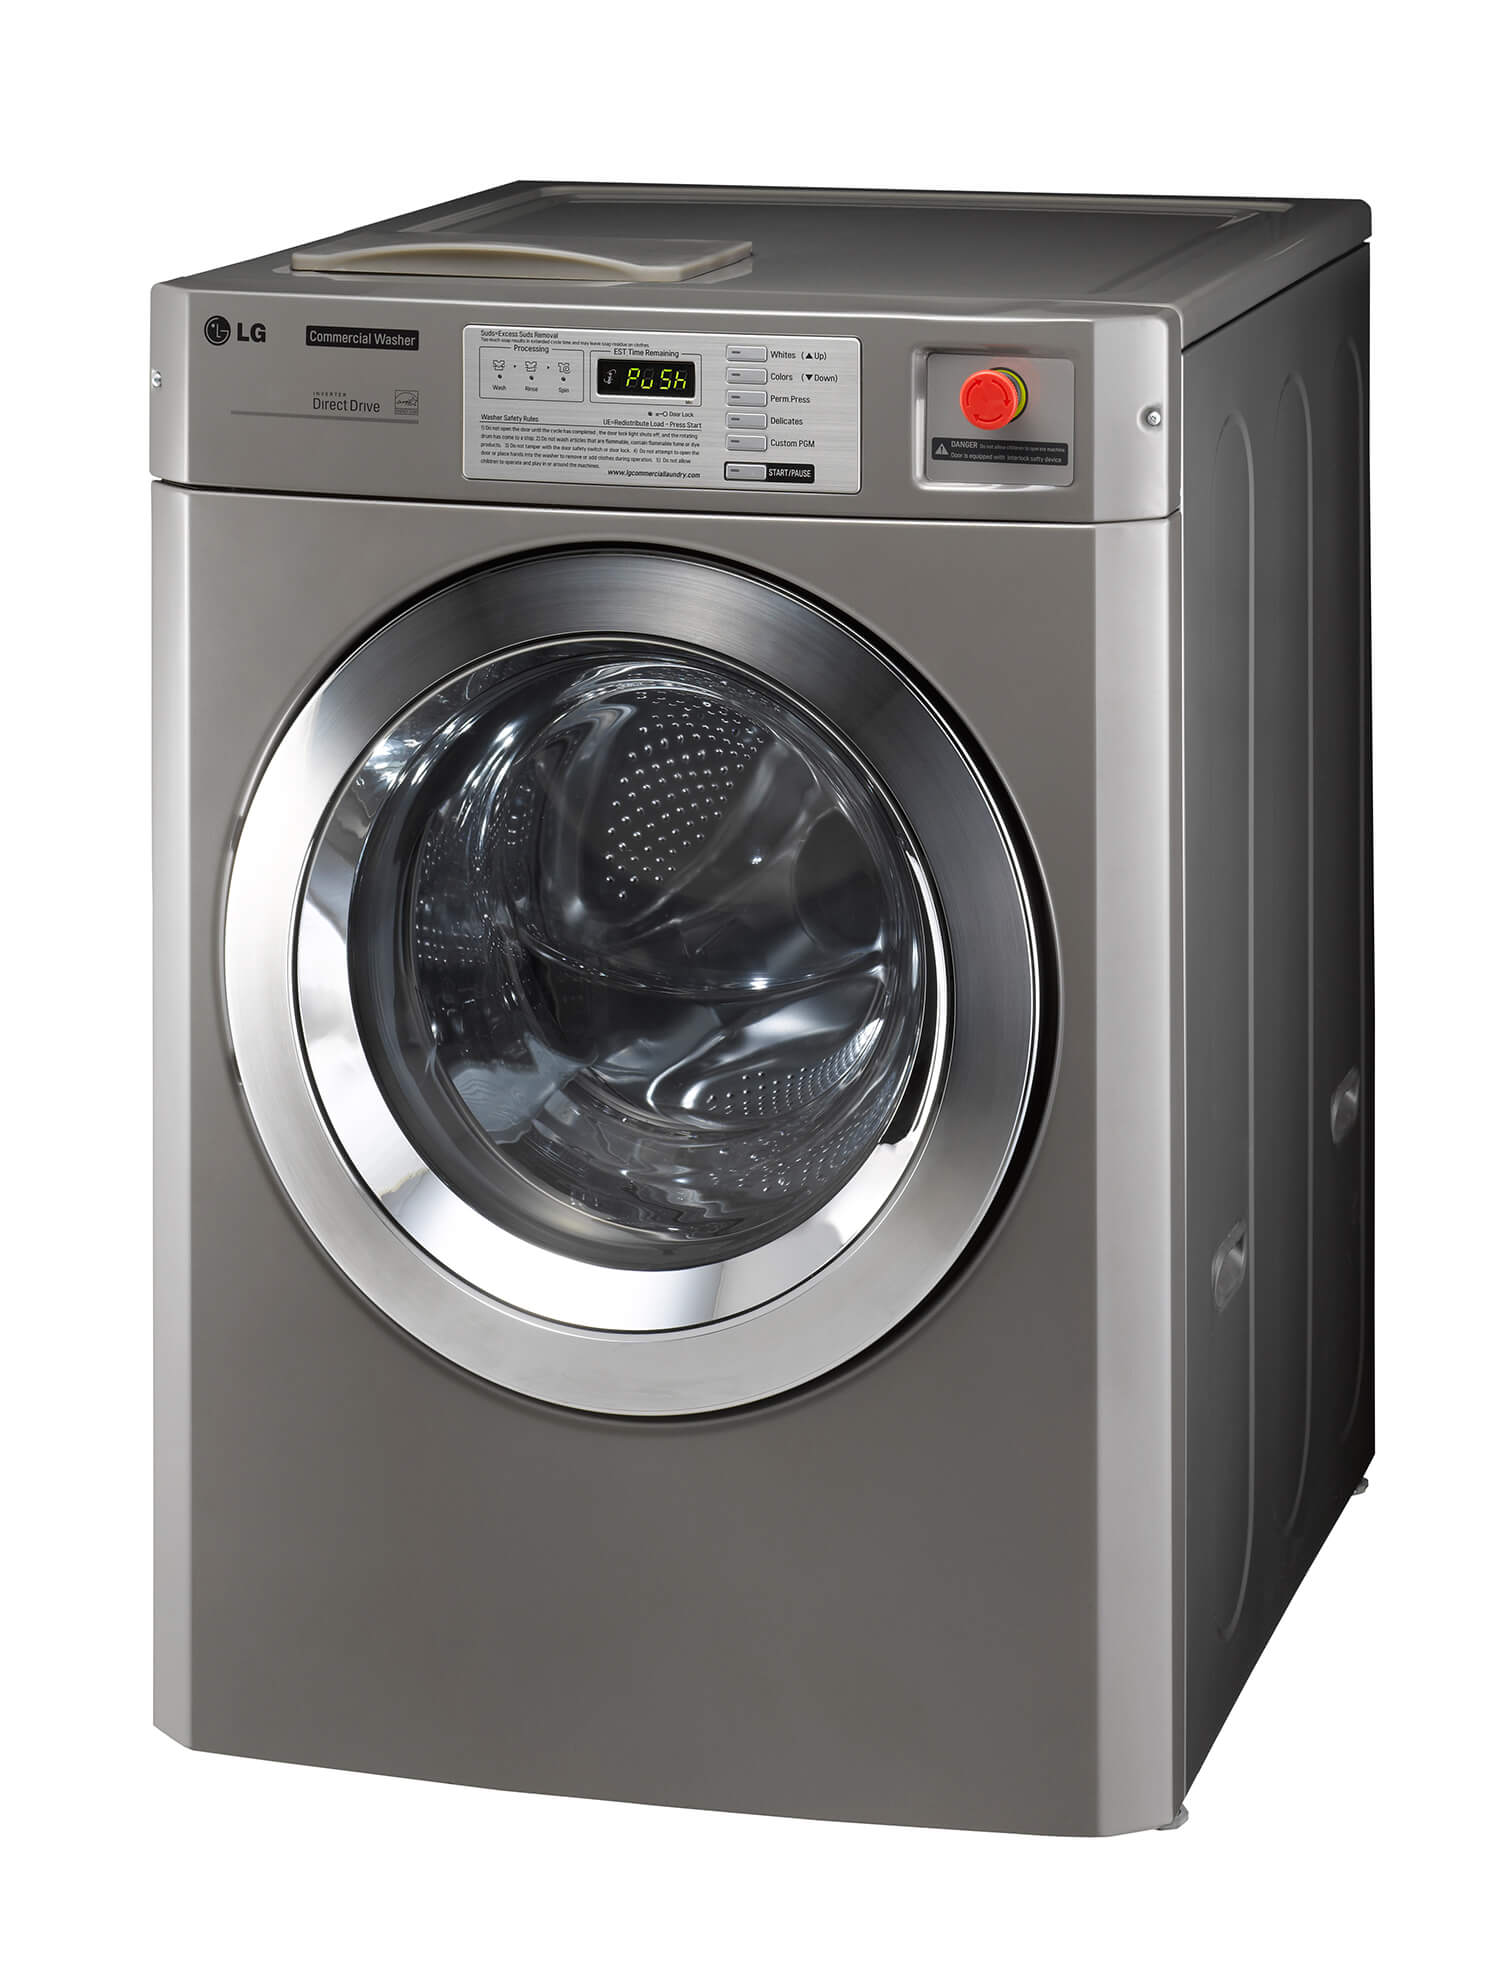 Прайс стиральная машина. Стиральная машина LG commercial Washer. Стиральная машина LG 7кг 2007. Стиральная машина LG Вашер. Стиральная машина лж 7 кг.